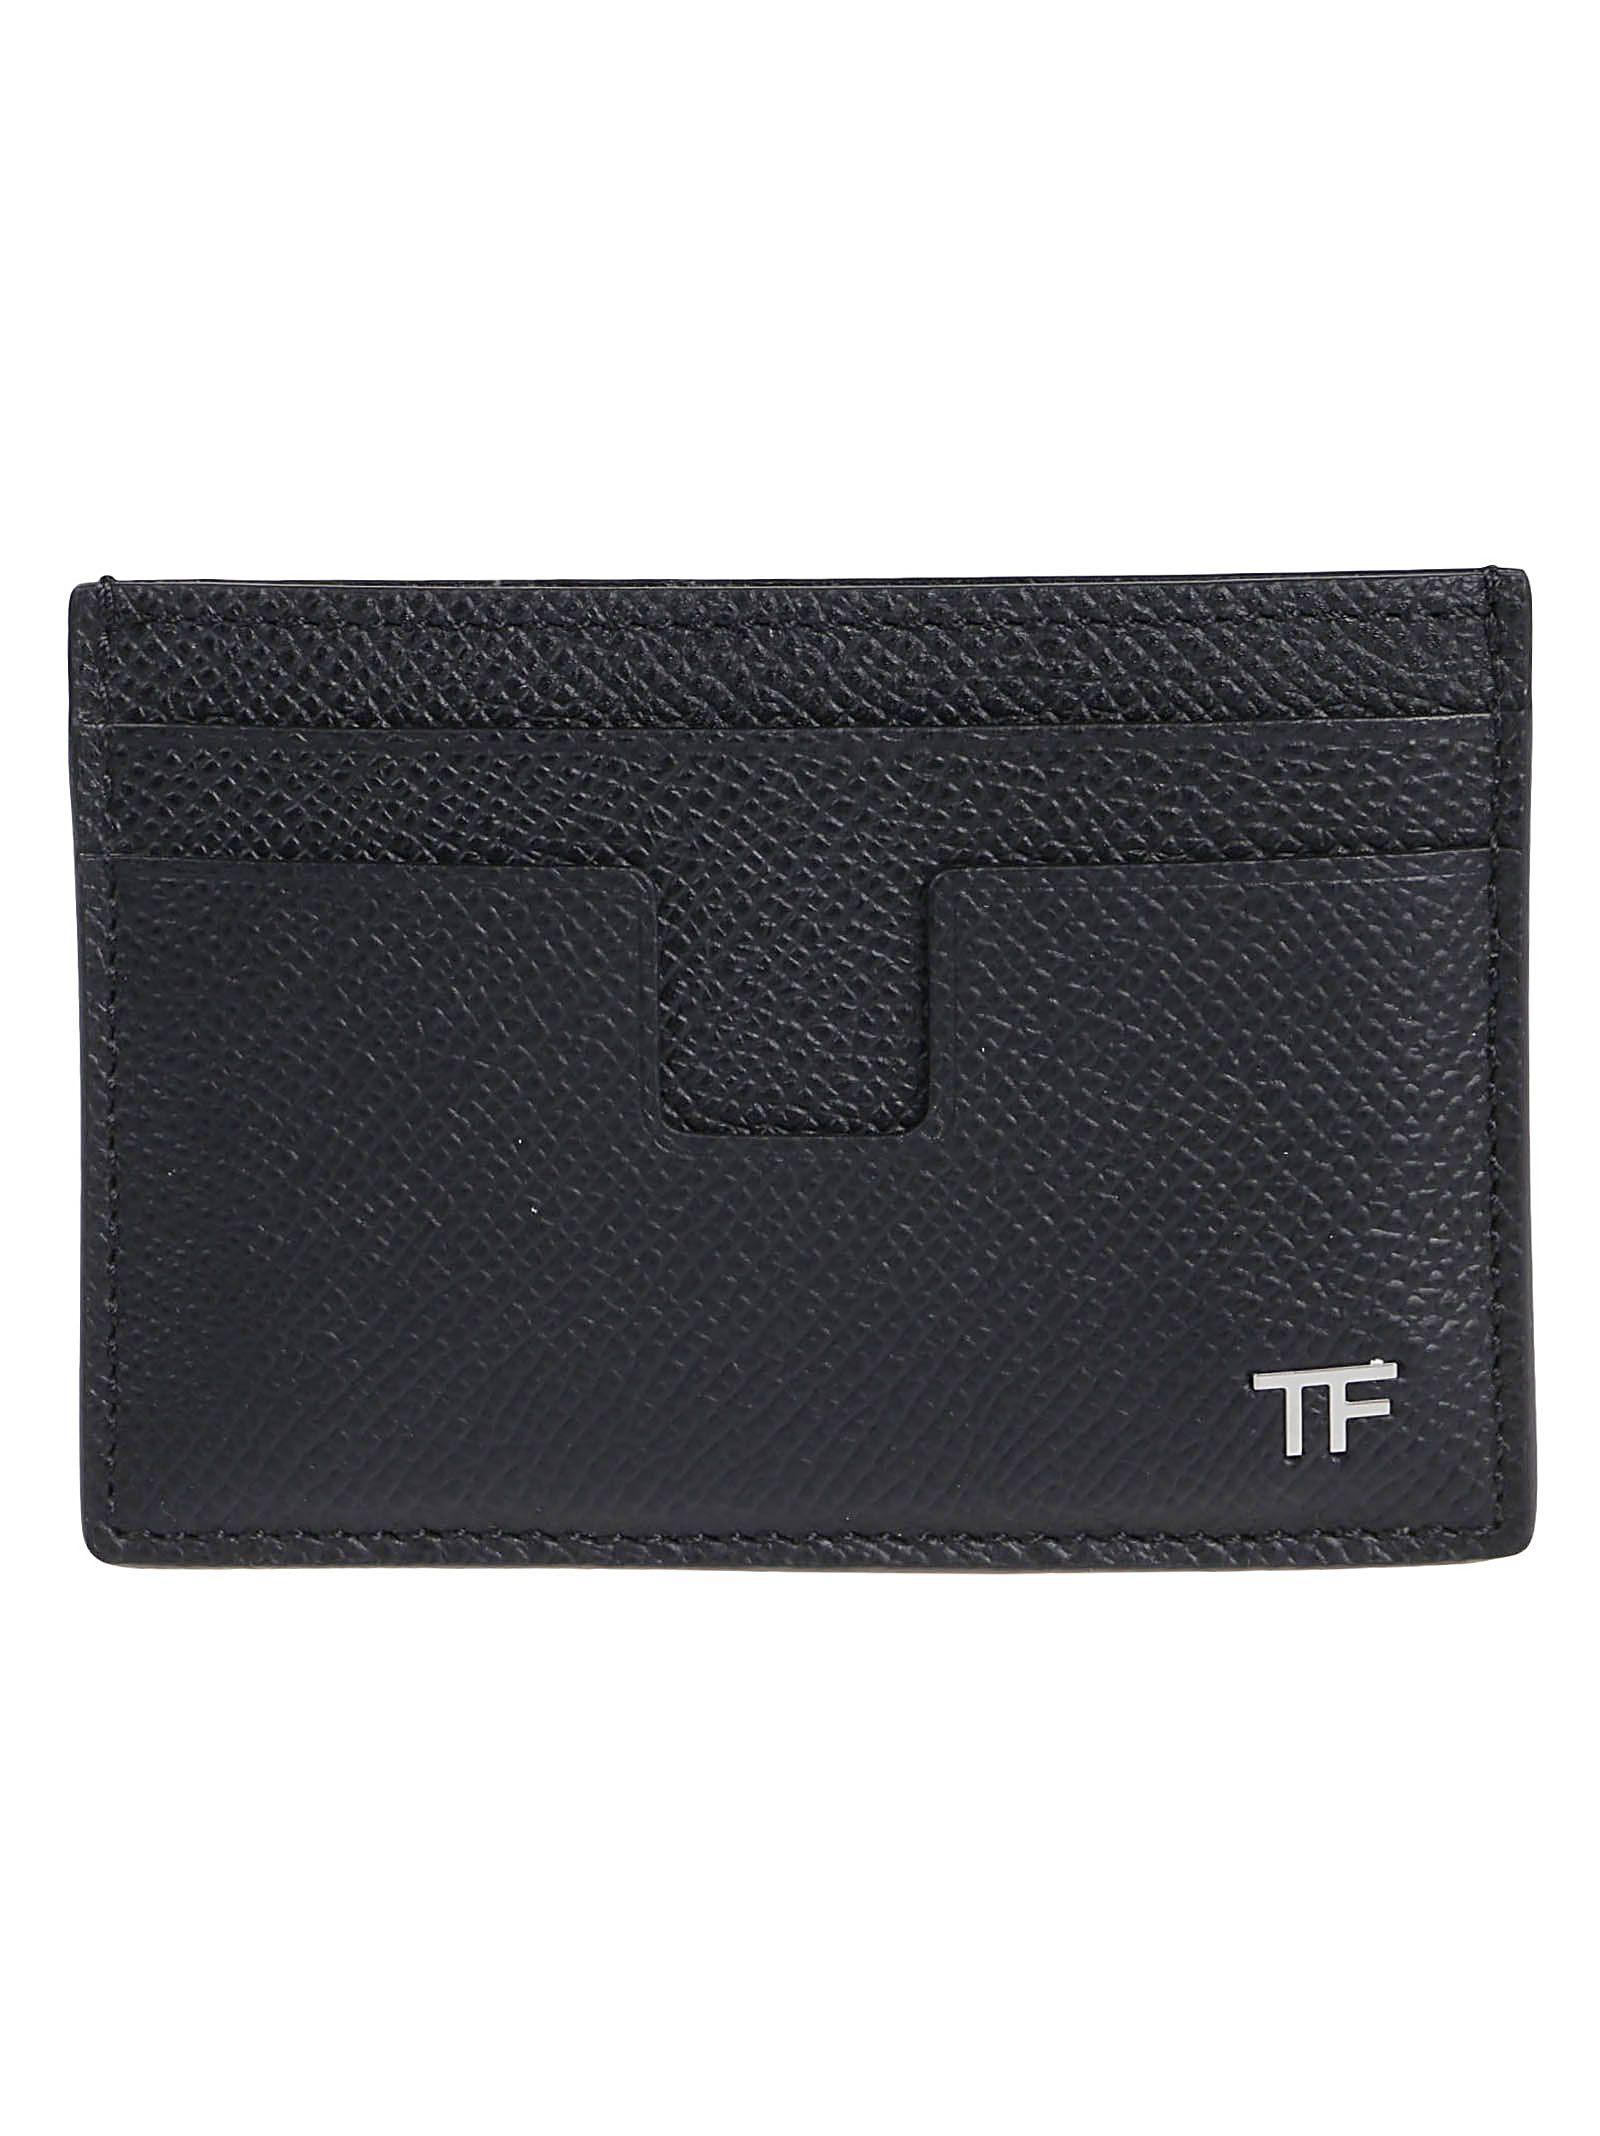 tom-ford-leather-t-line-credit-card-holder-in-black-for-men-save-17